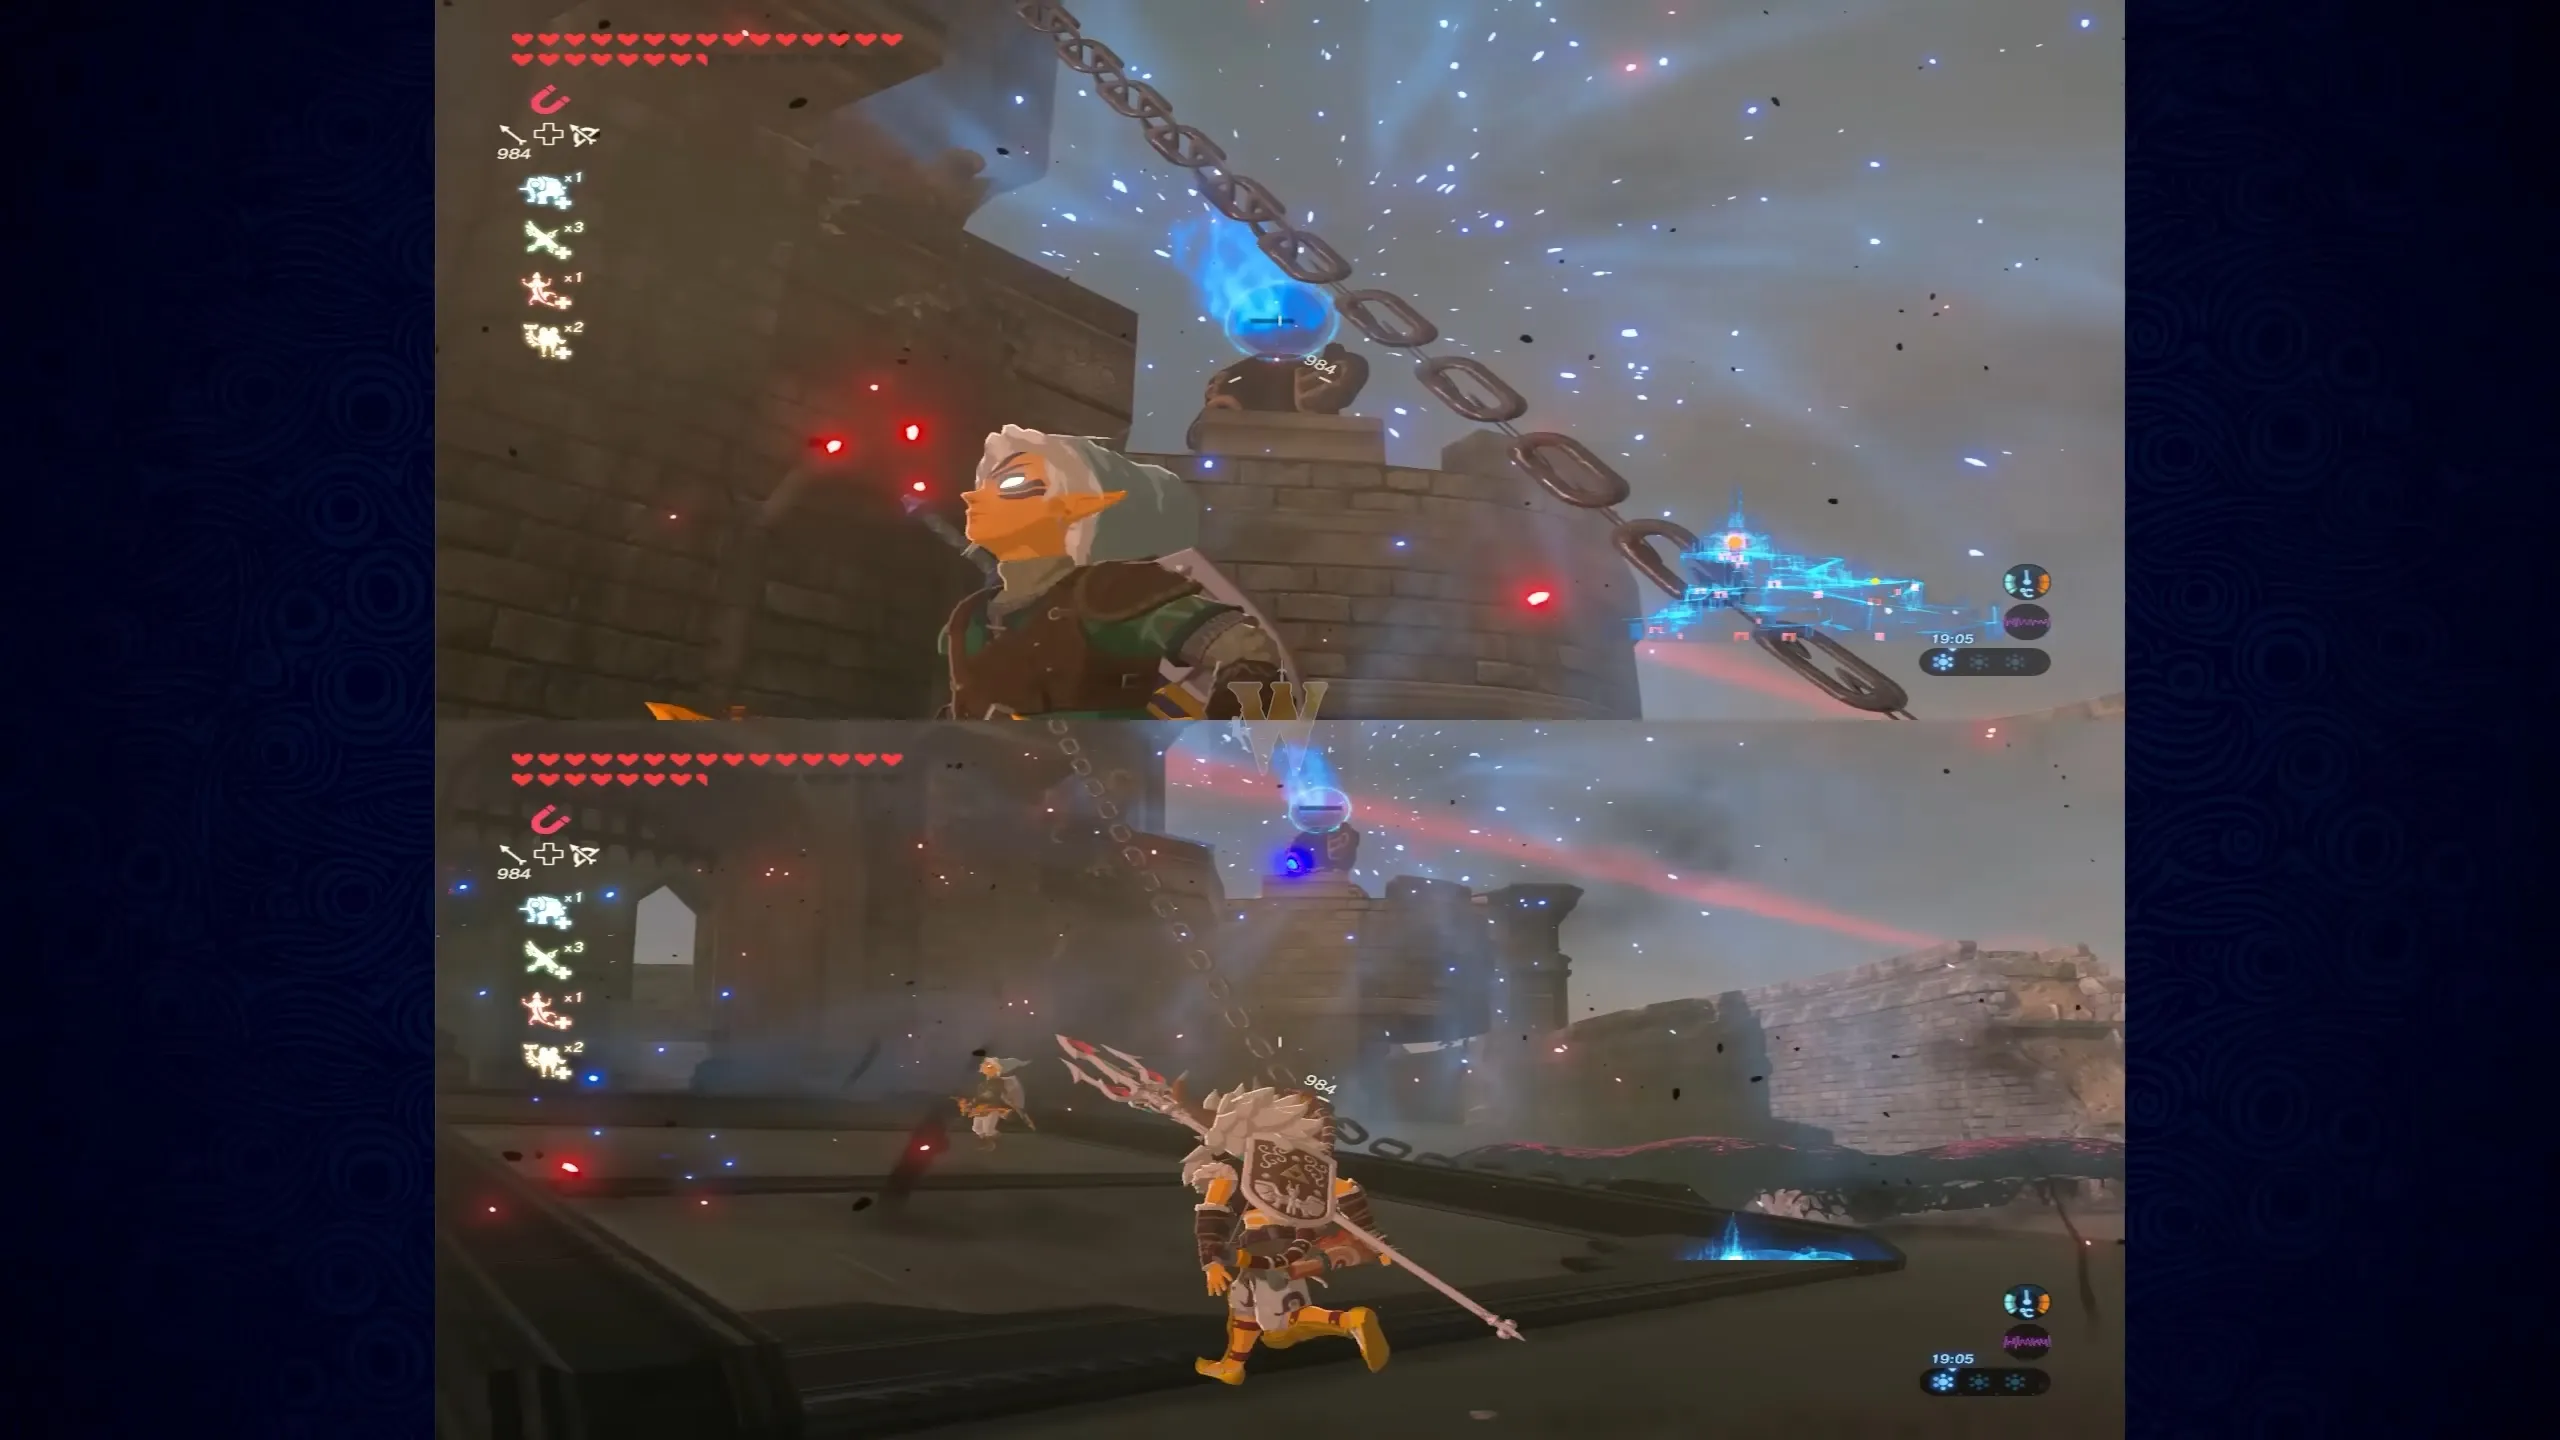 Zelda: Breath of the Wild split screen multiplayer mod shown in action